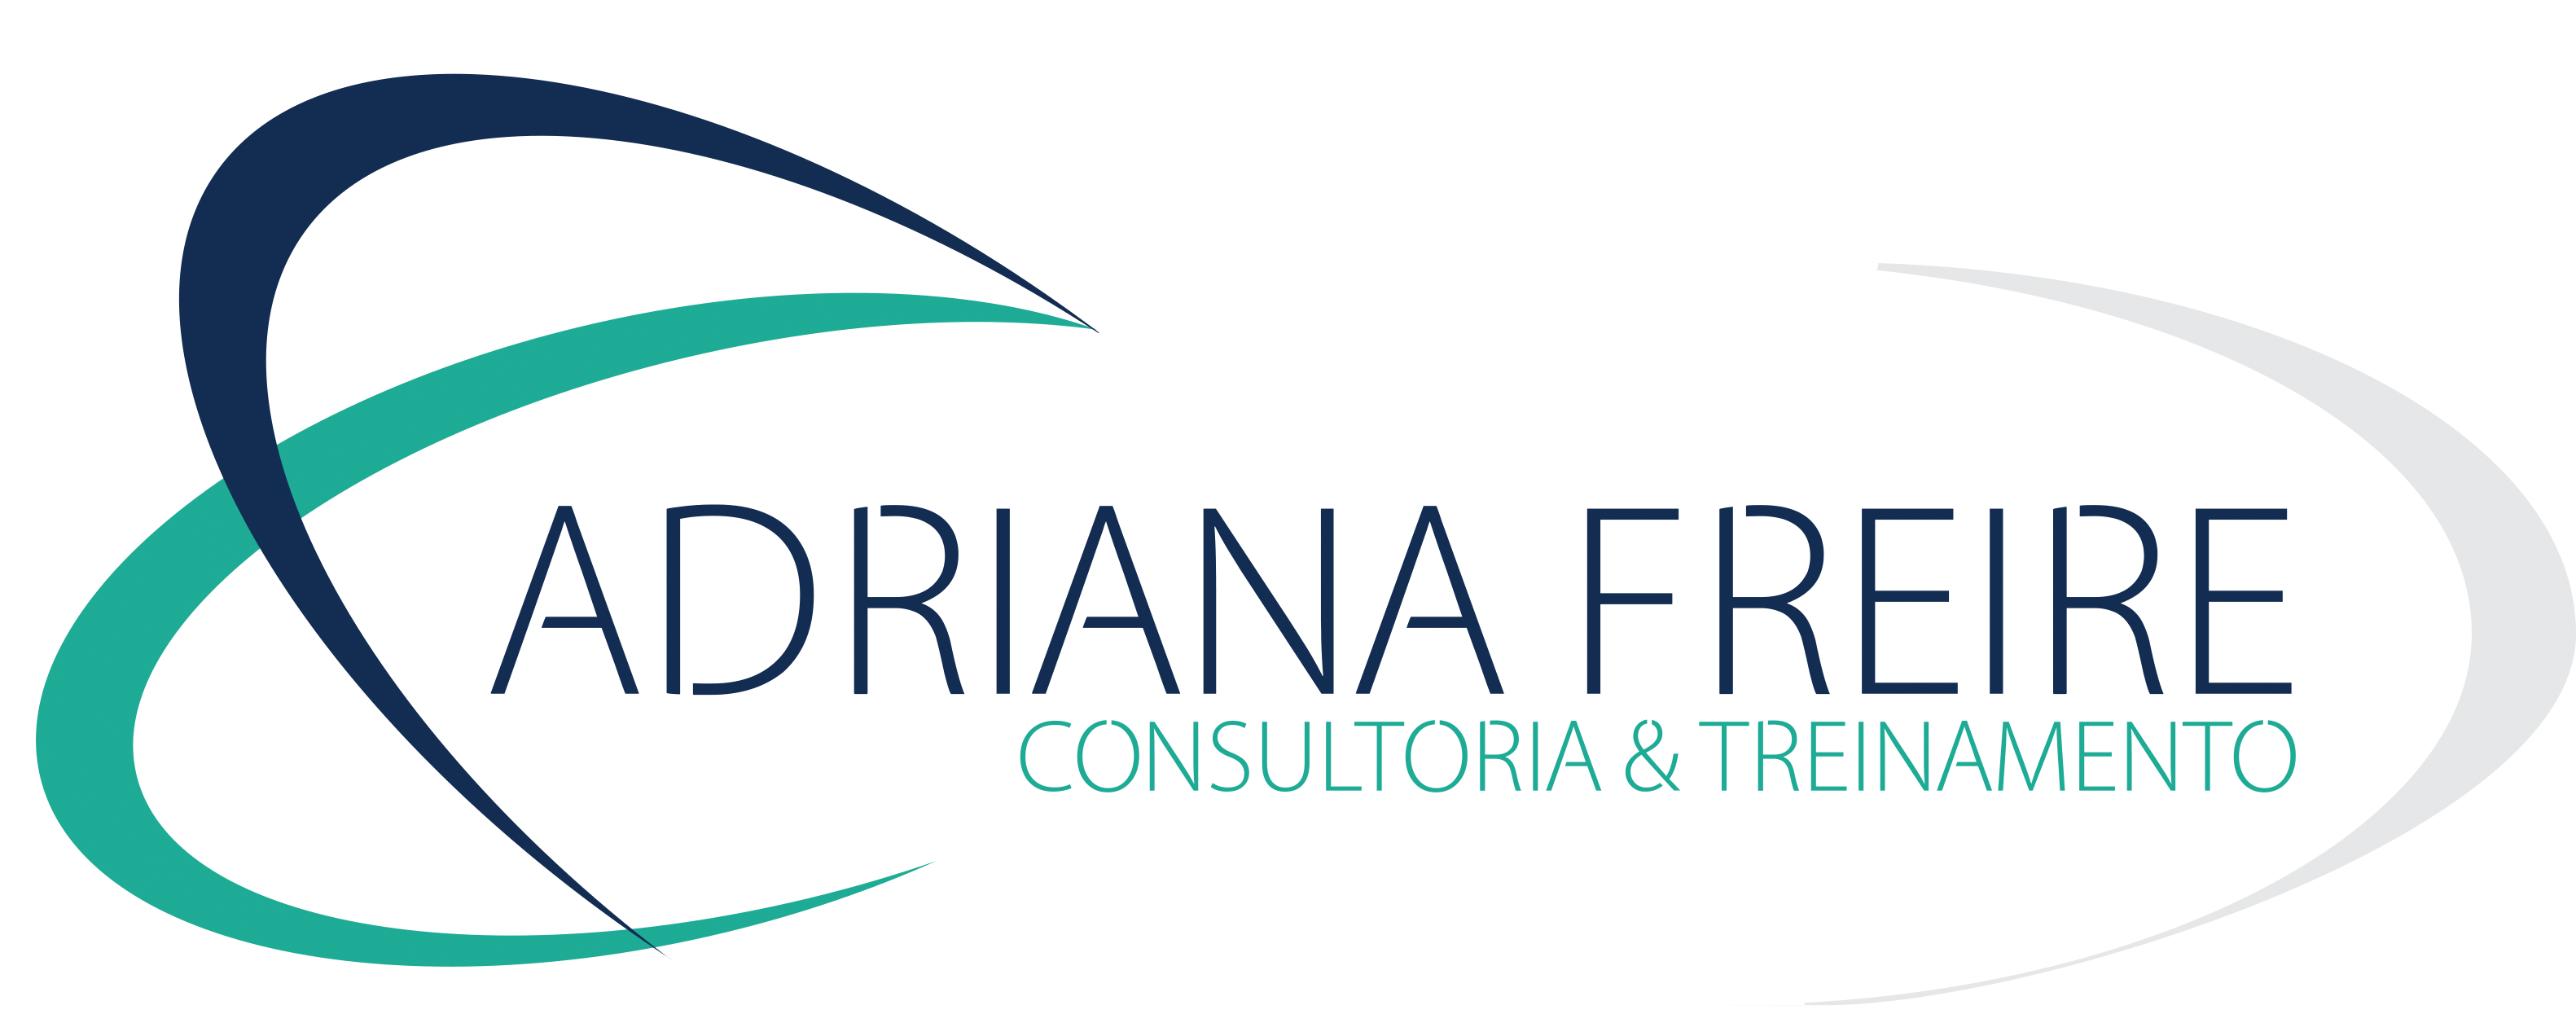 Adriana Freire | Consultoria & Treinamento